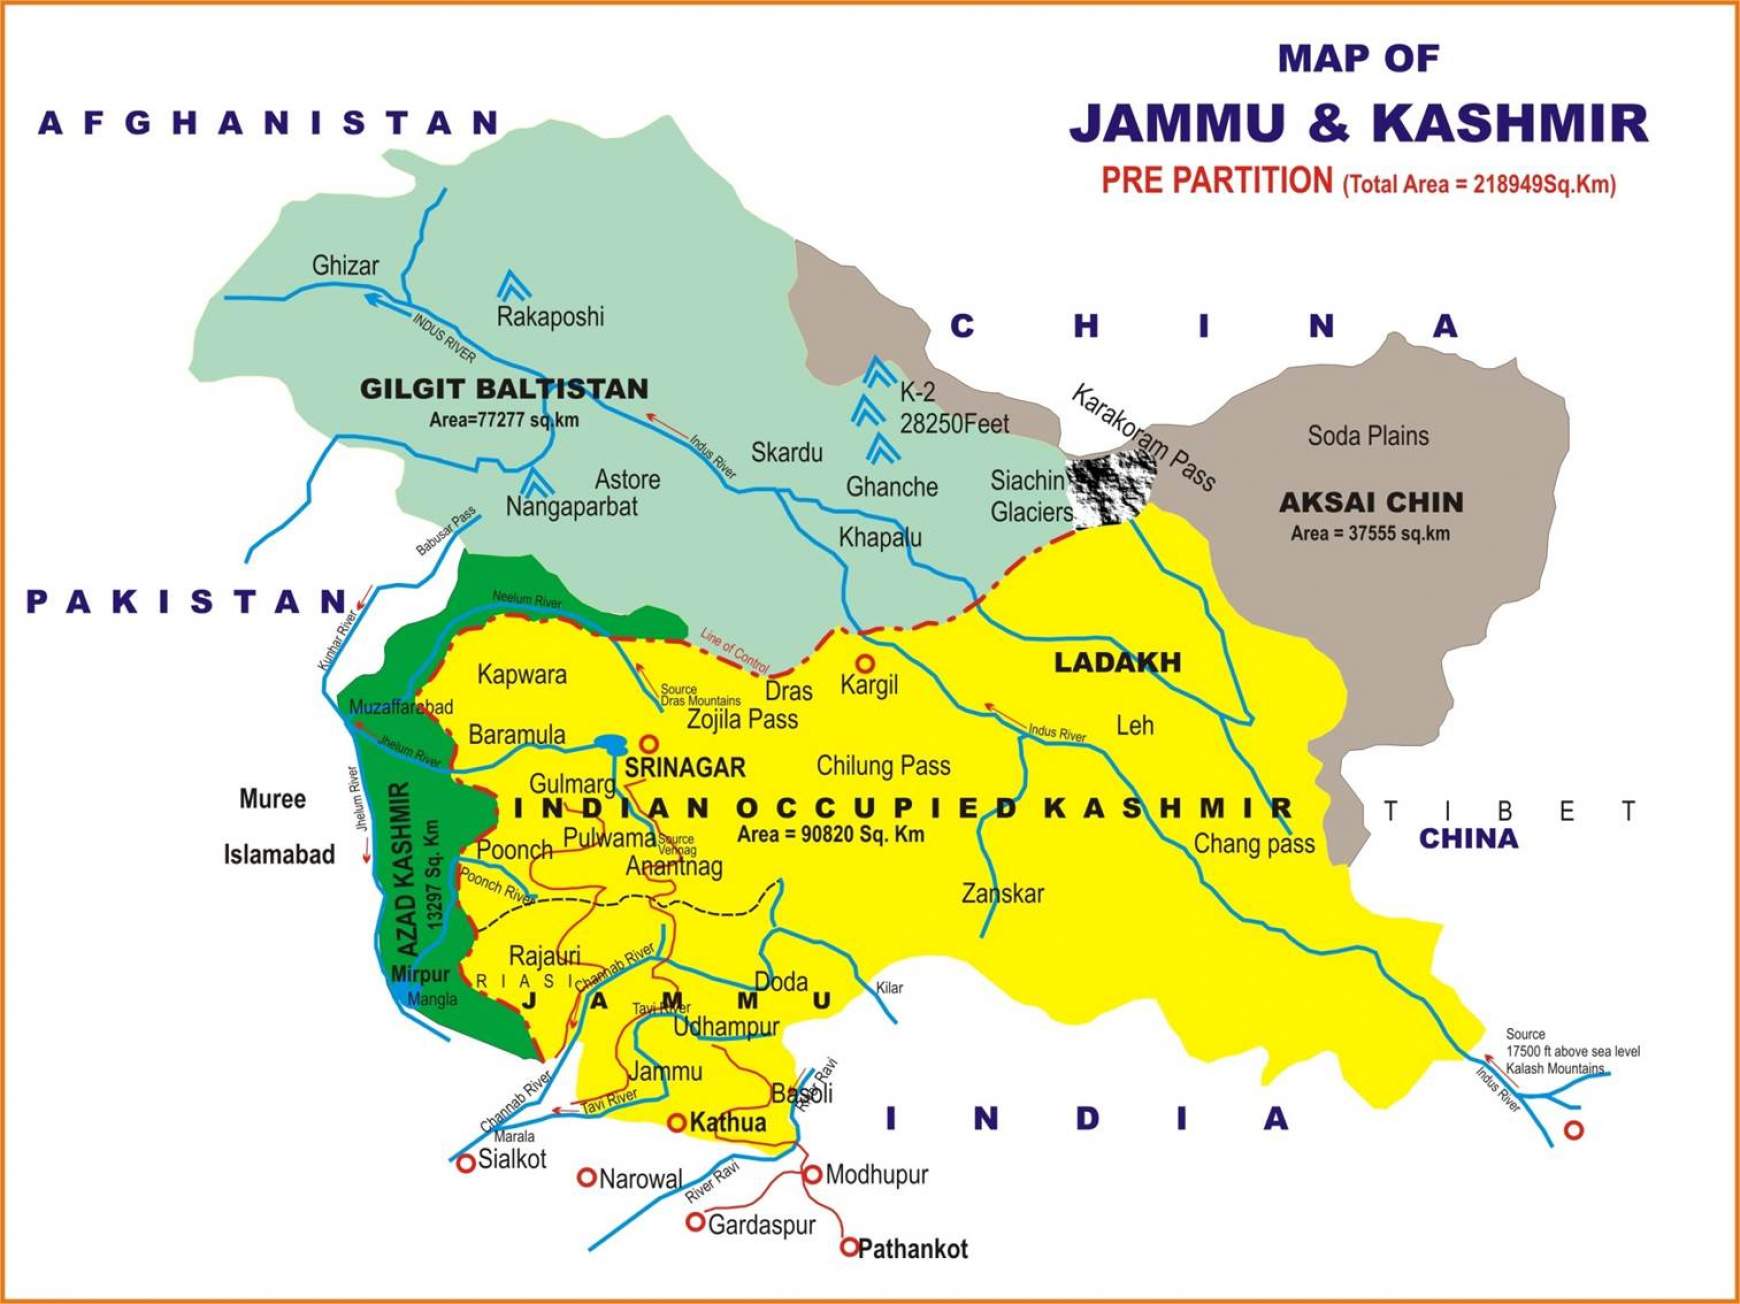 Kasmír térképe. Sárgával az India, szürkéskékkel a Pakisztán által kontroll alatt tartott régiók. Zölddel a pakisztáni államhoz tartozó autonóm tartomány, Azad Kashmir, míg szürkével a Kína által megszállás alatt tartott Aksai Chin régiók láthatóak.